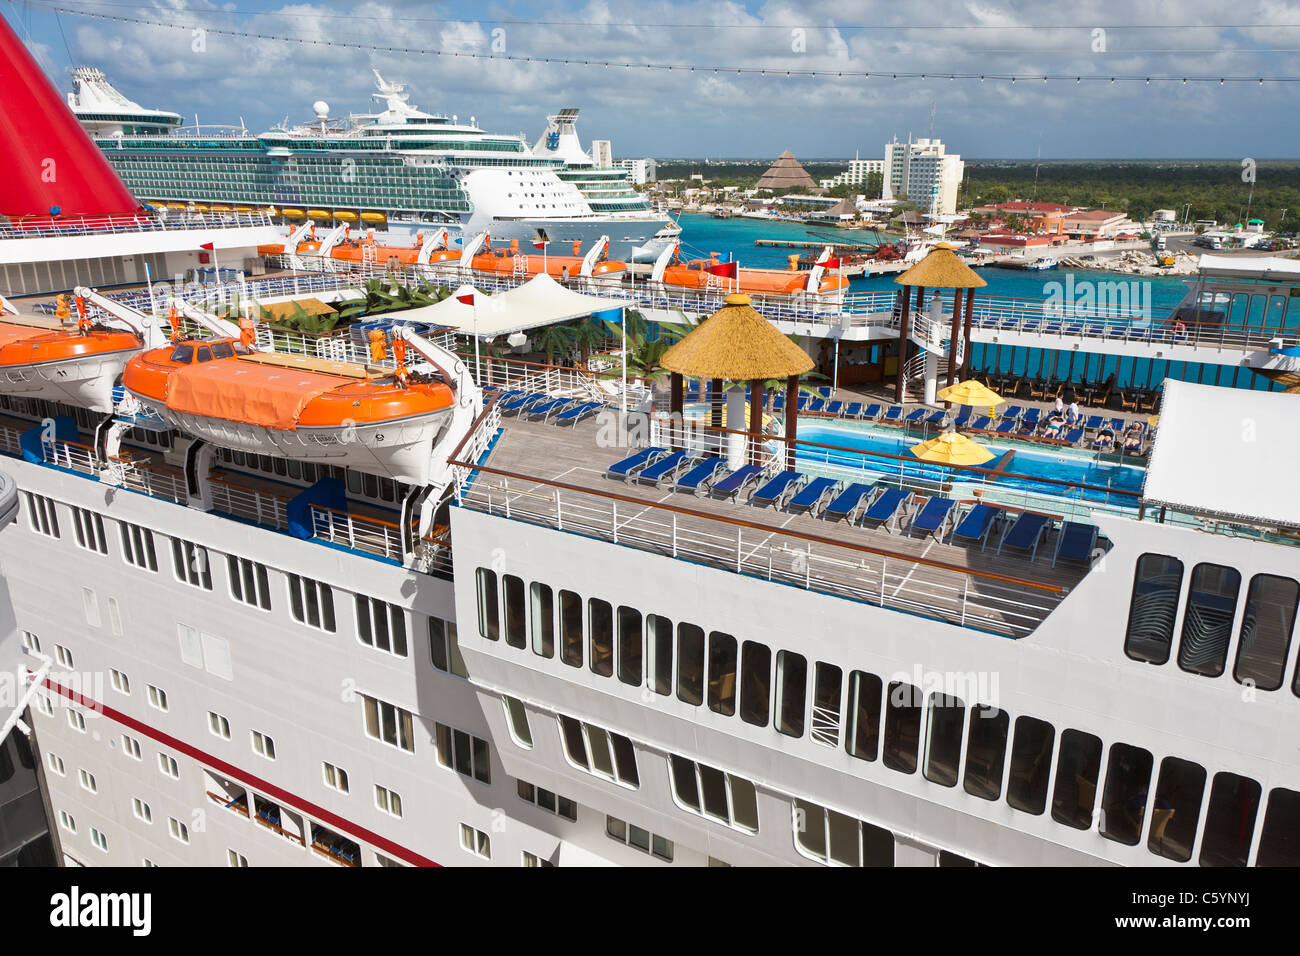 Carnaval de éxtasis y dos buques de cruceros Royal Caribbean en el puerto en Cozumel, México, en el Mar Caribe Foto de stock